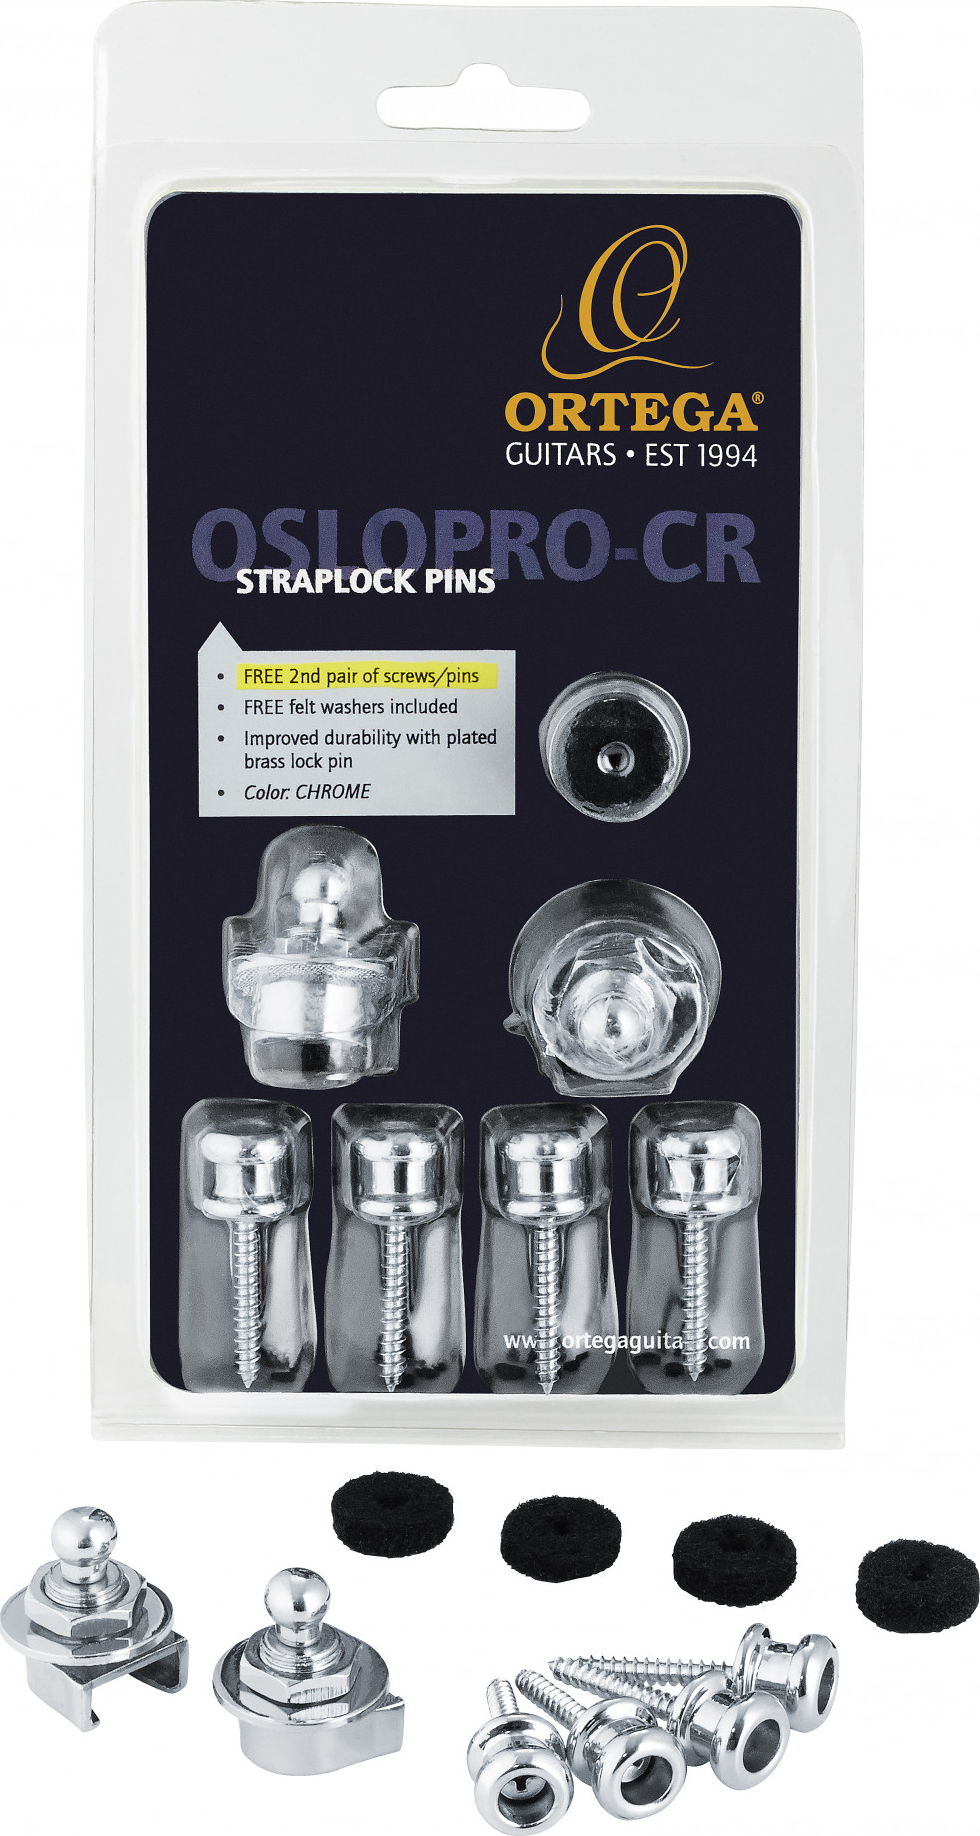 Ortega OSLOPRO-CR Strap Lock Pin